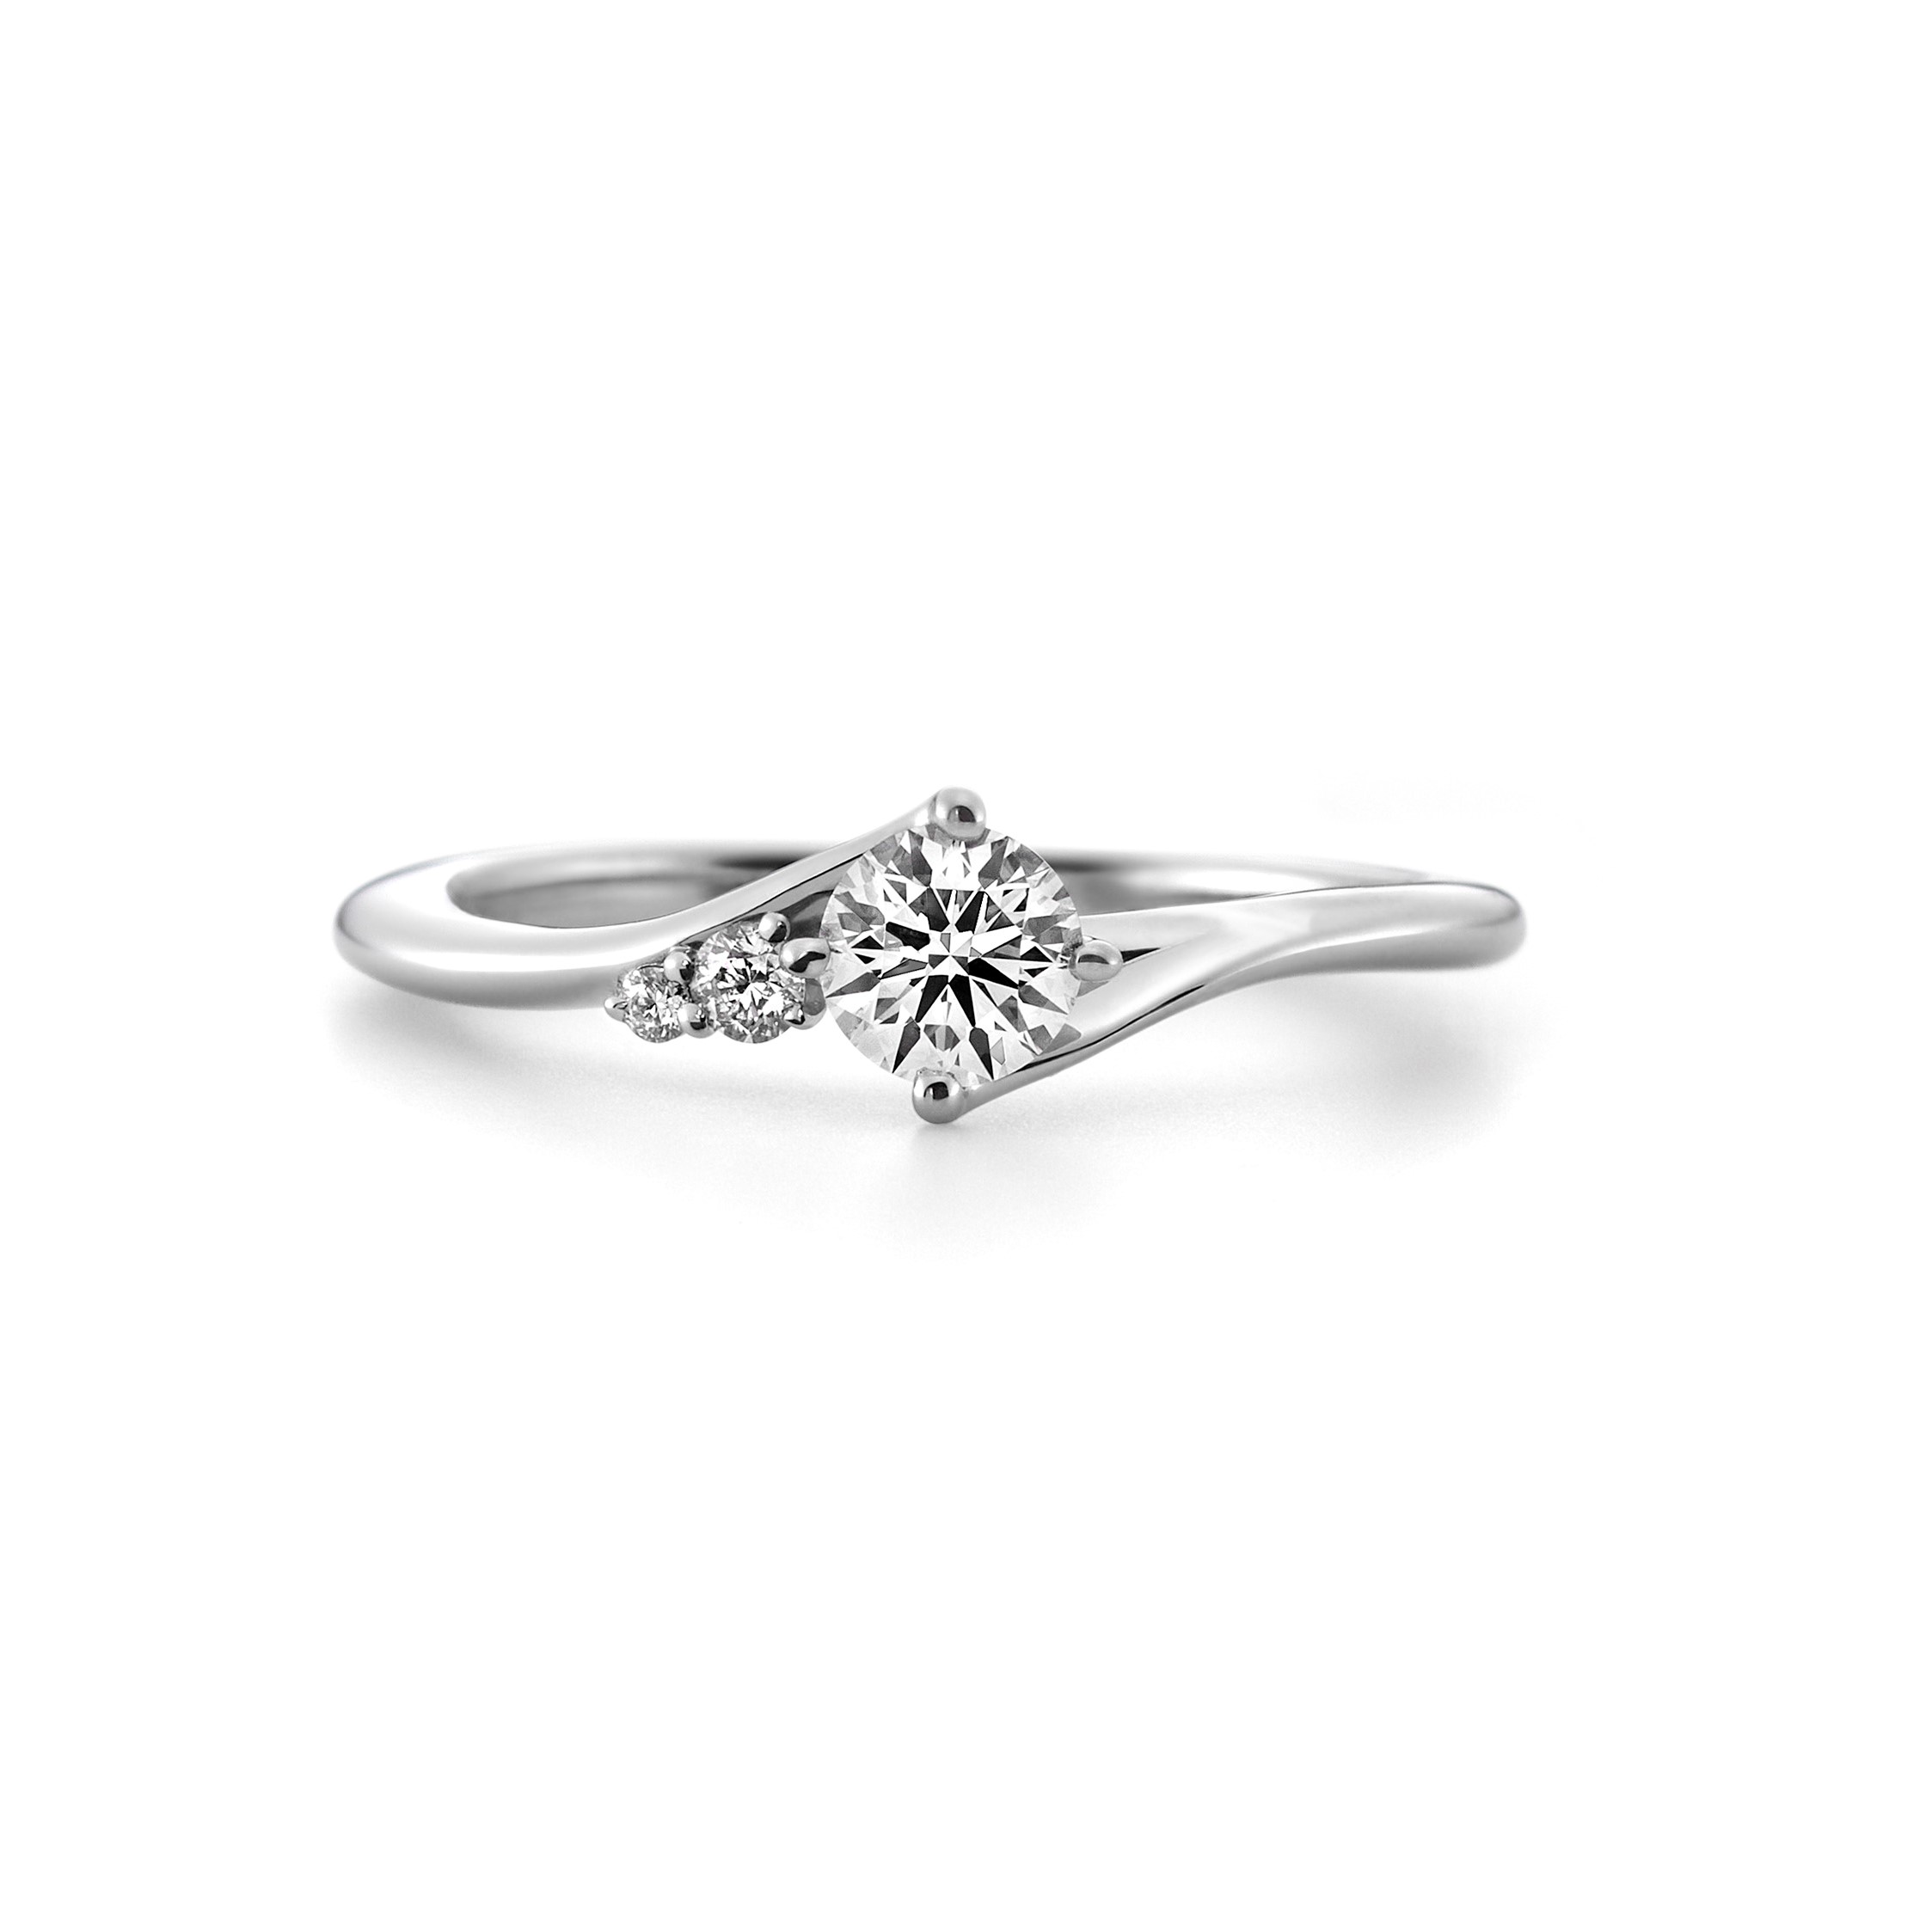 ラザール・ダイヤモンドの婚約指輪「カシオペア」